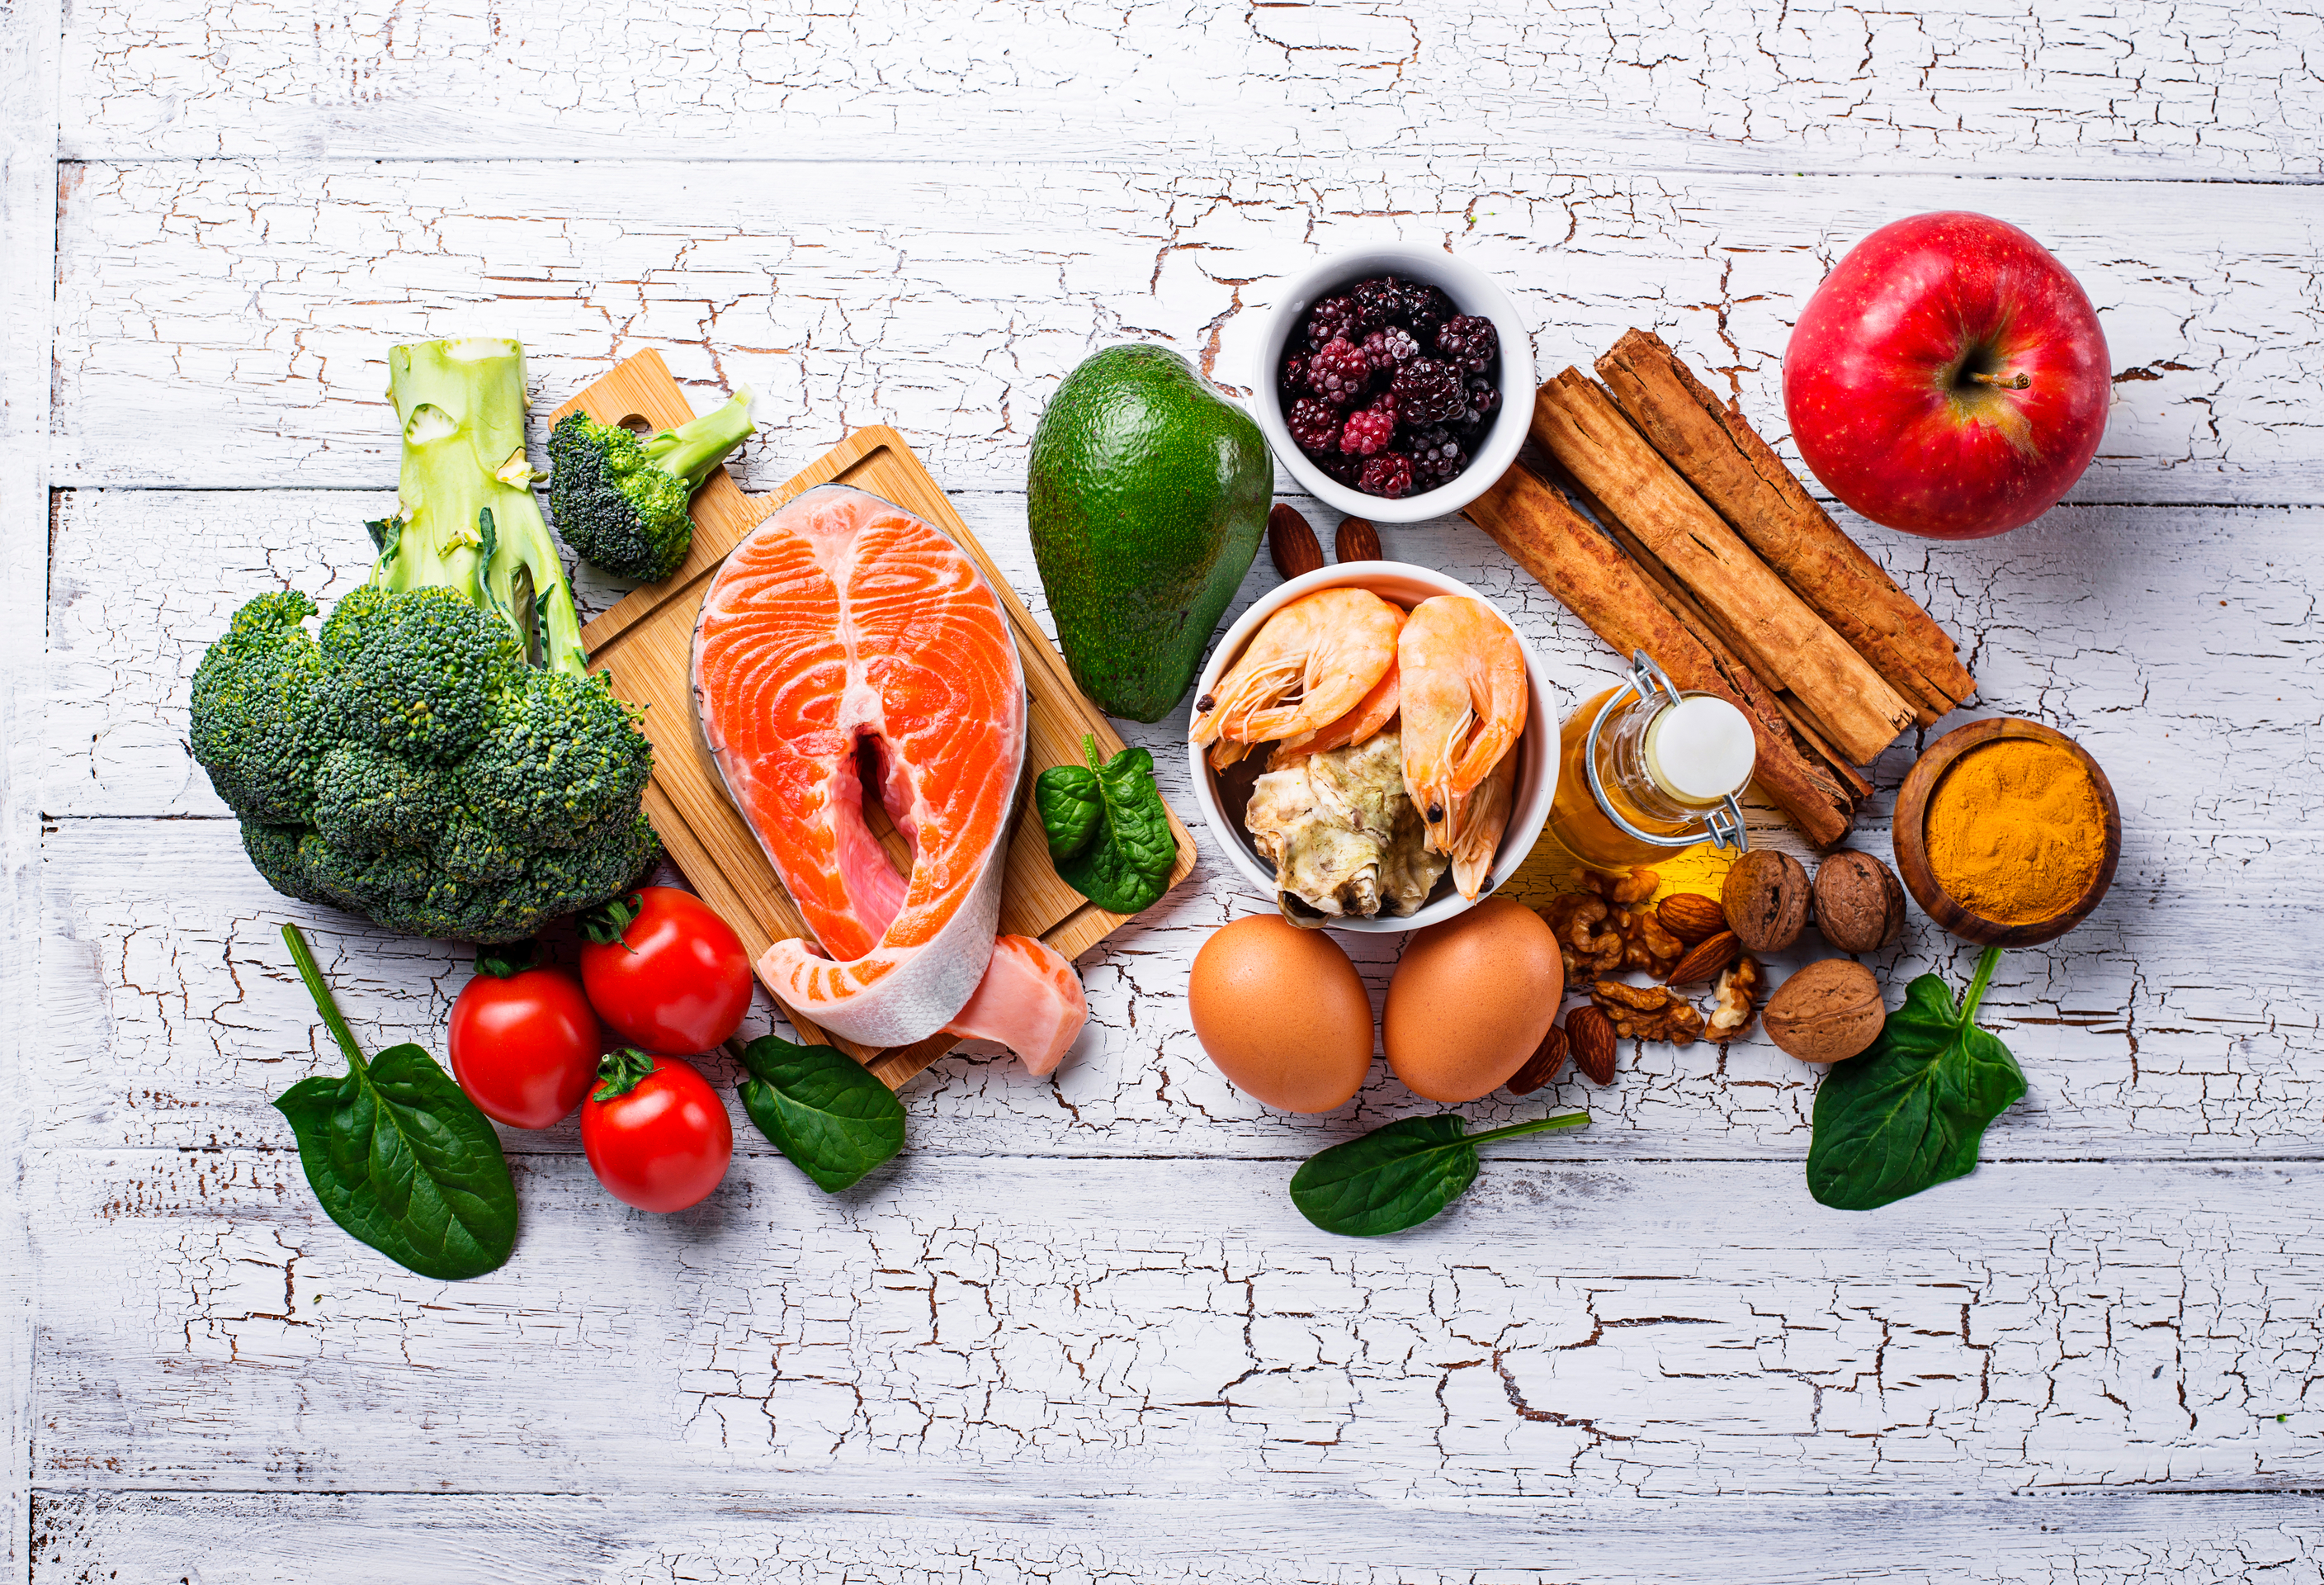 Dietetyczne trendy – po jakie produkty sięgamy dbając o zdrowie i figurę?